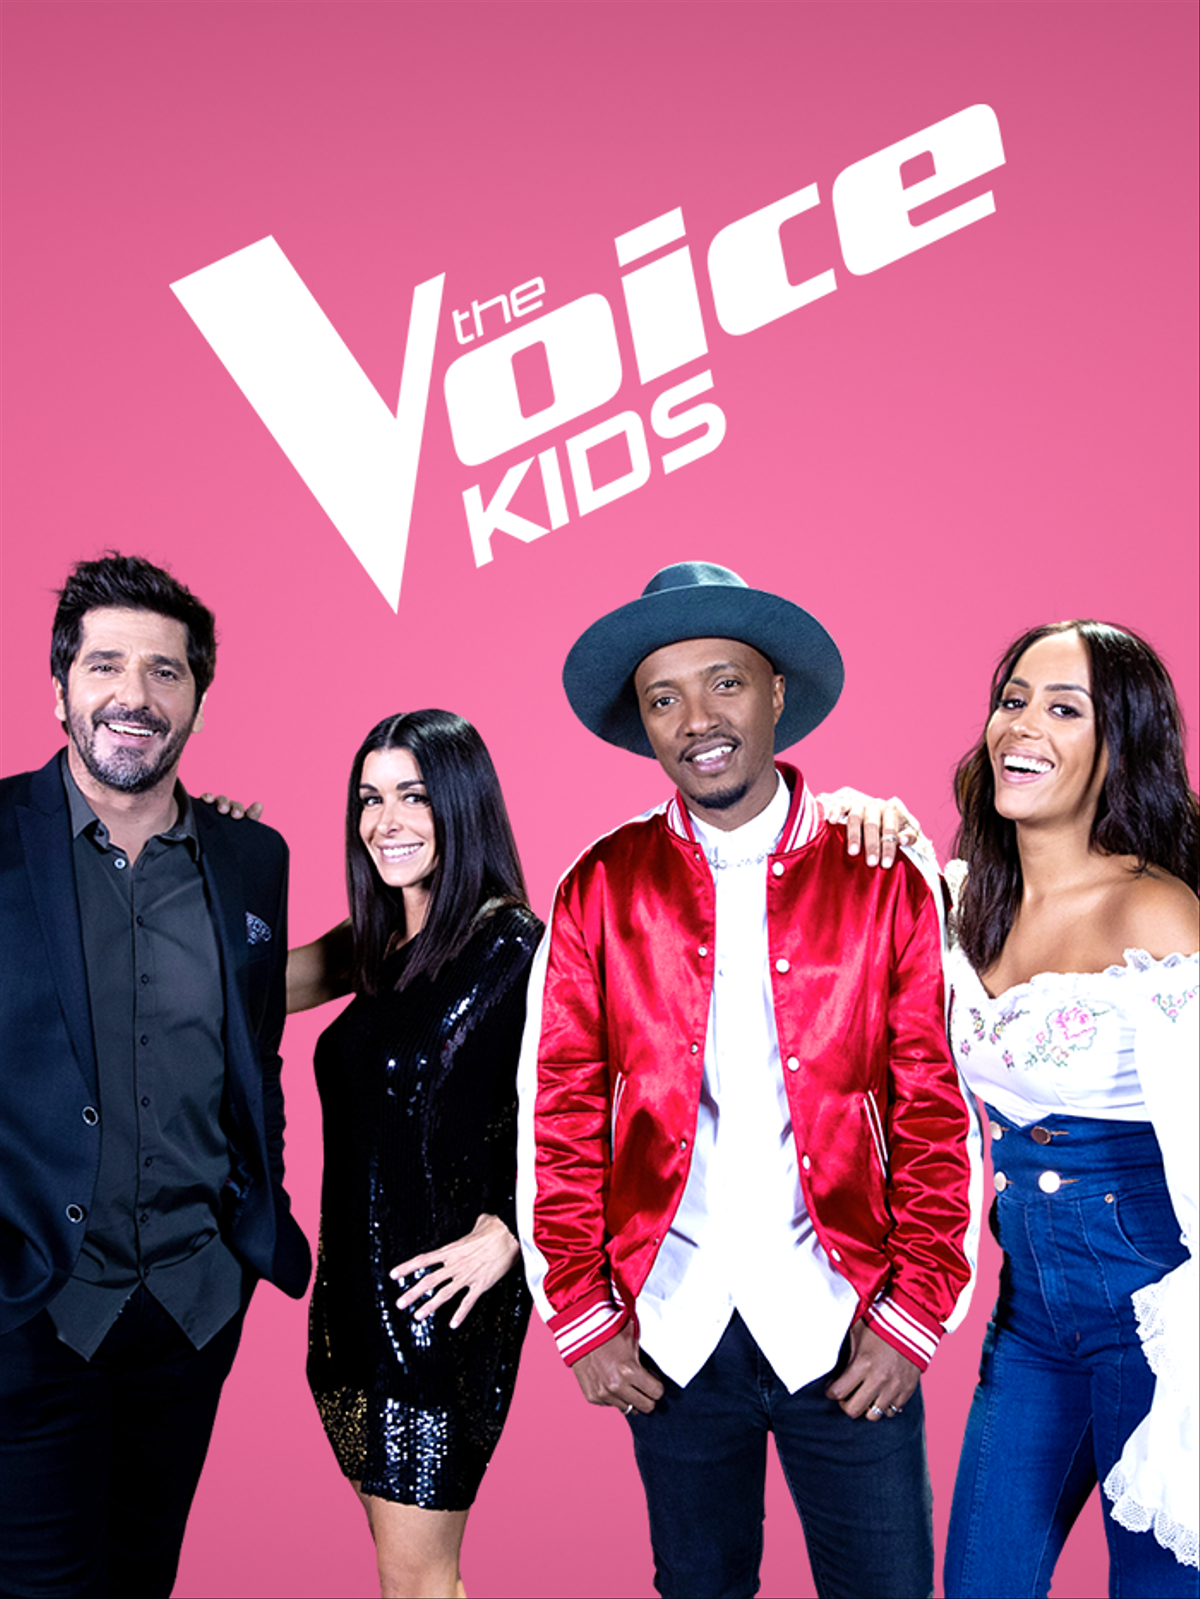 Voice. The Voices. Войс. Voice Kids 2019. Voice show.